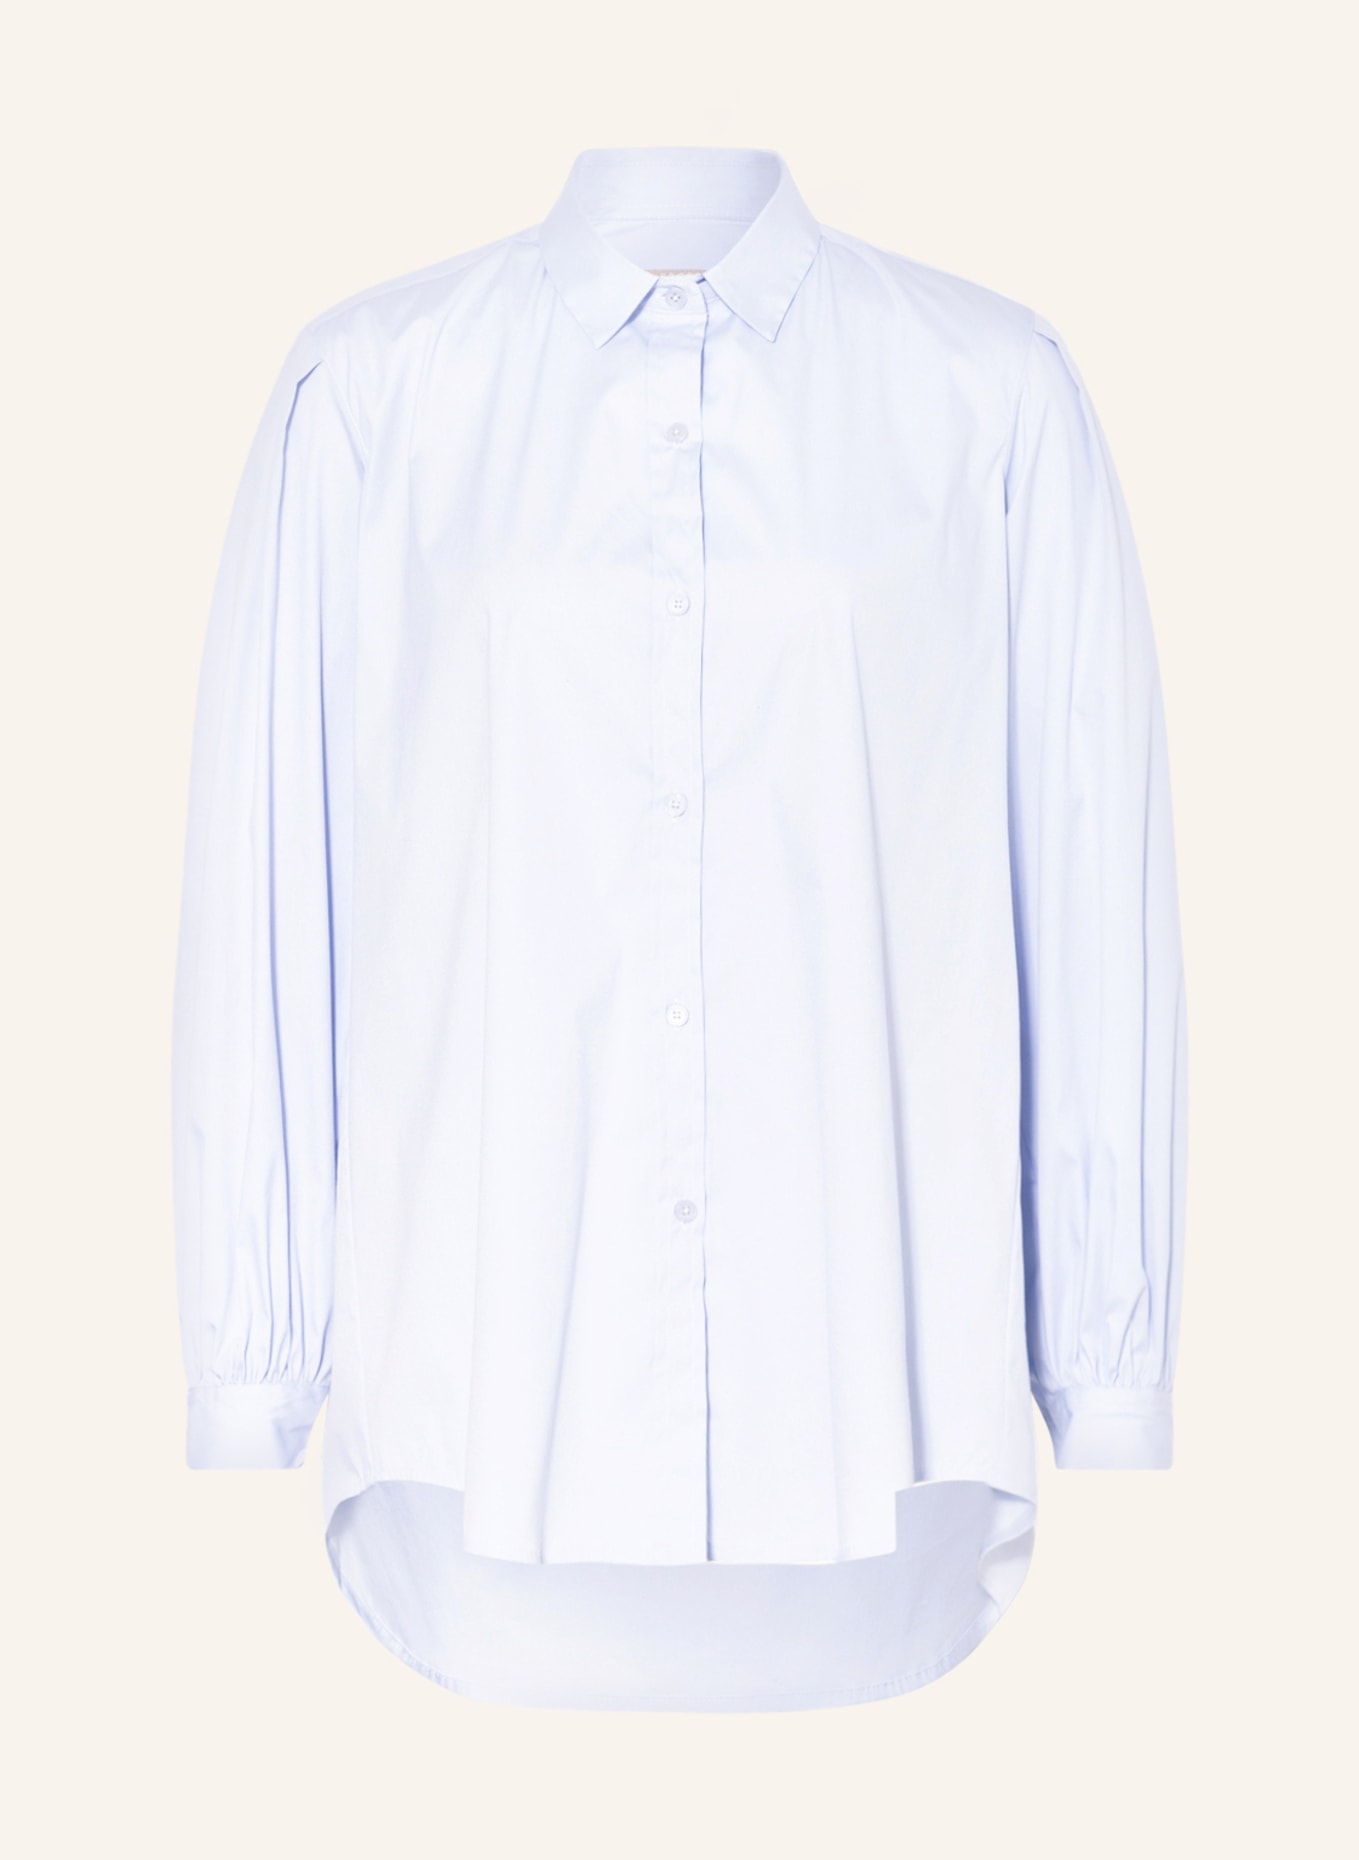 (THE MERCER) N.Y. Shirt blouse, Color: LIGHT BLUE (Image 1)